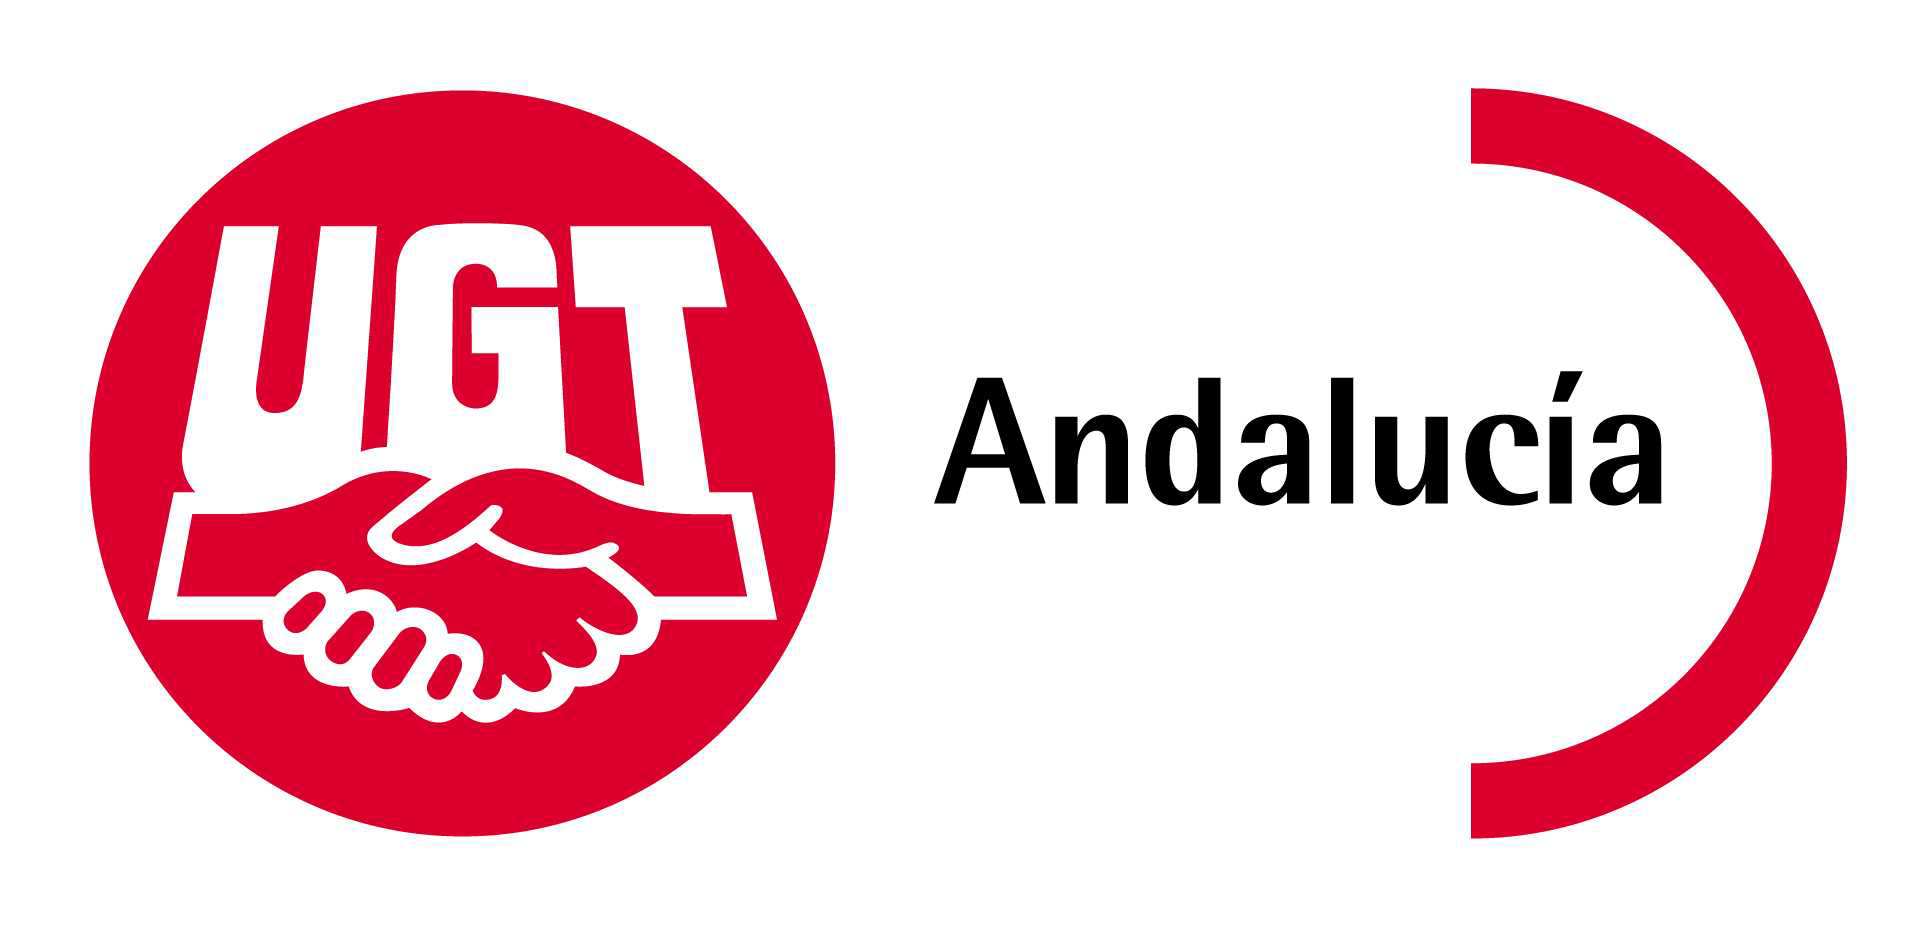 ACUERDO POR LA ECONOMÍA SOCIAL ANDALUZA 1. Situación actual de la Economía Social en Andalucía La economía social andaluza la constituyen en la actualidad más de 7.000 empresas, que generan más de 67.